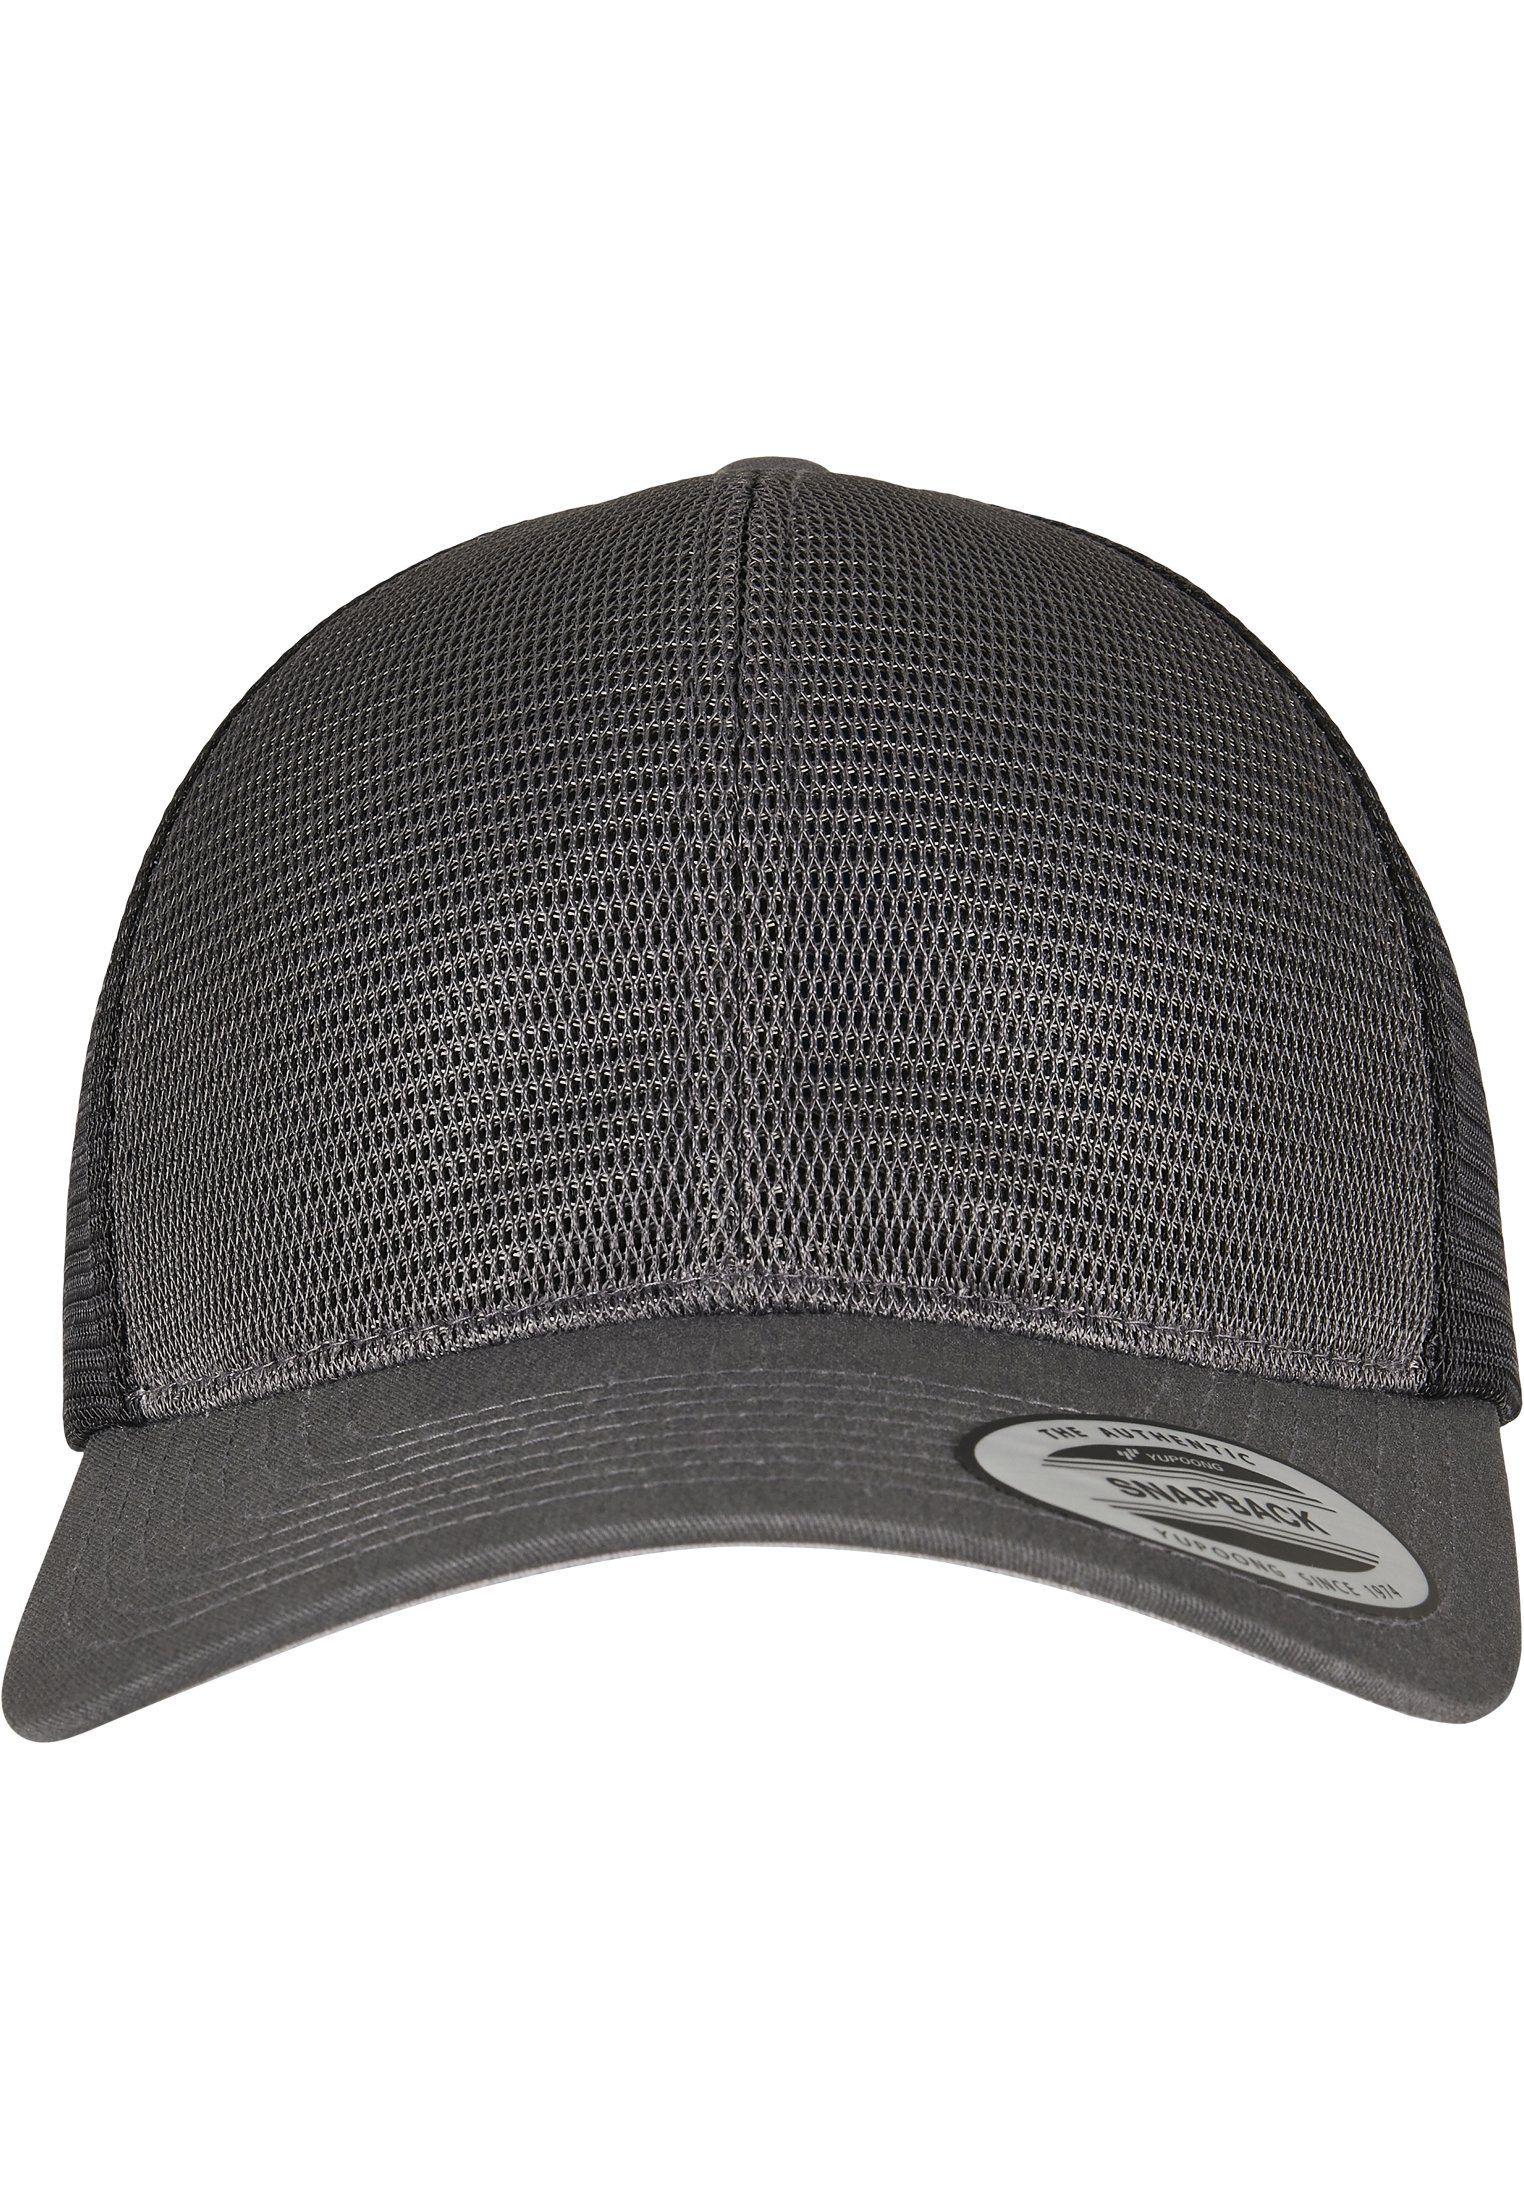 Flexfit Flex 360° Accessoires Cap 2-Tone charcoal/black Omnimesh Cap